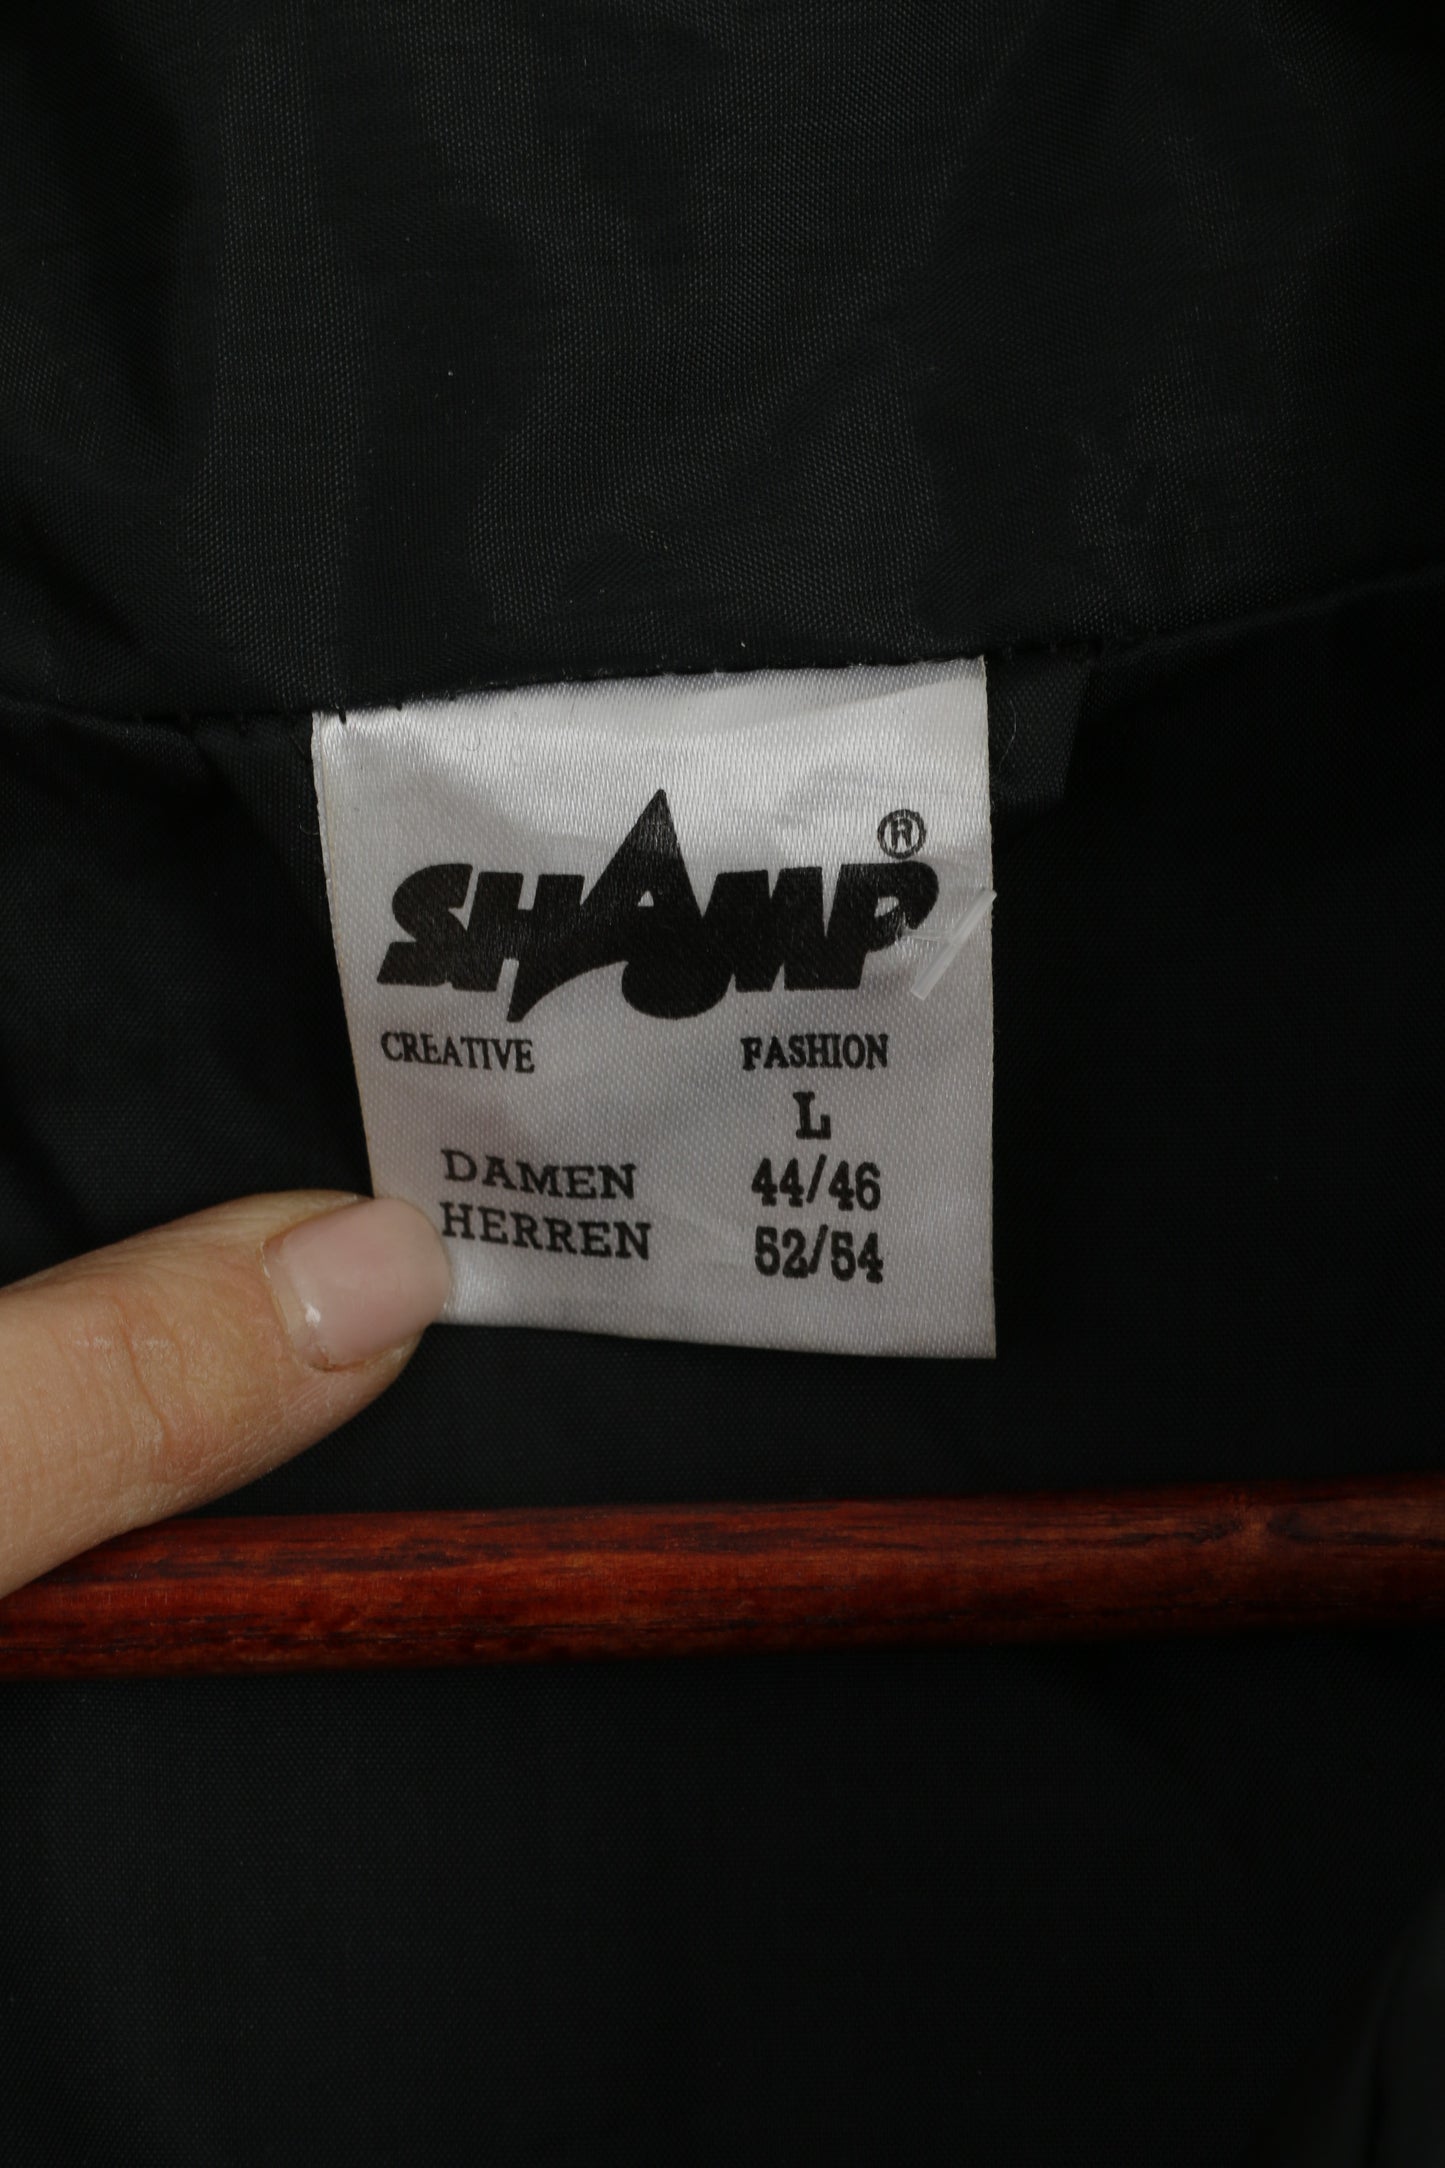 Giacca da uomo Shamp L. Top antipioggia con cerniera impermeabile in nylon bordeaux